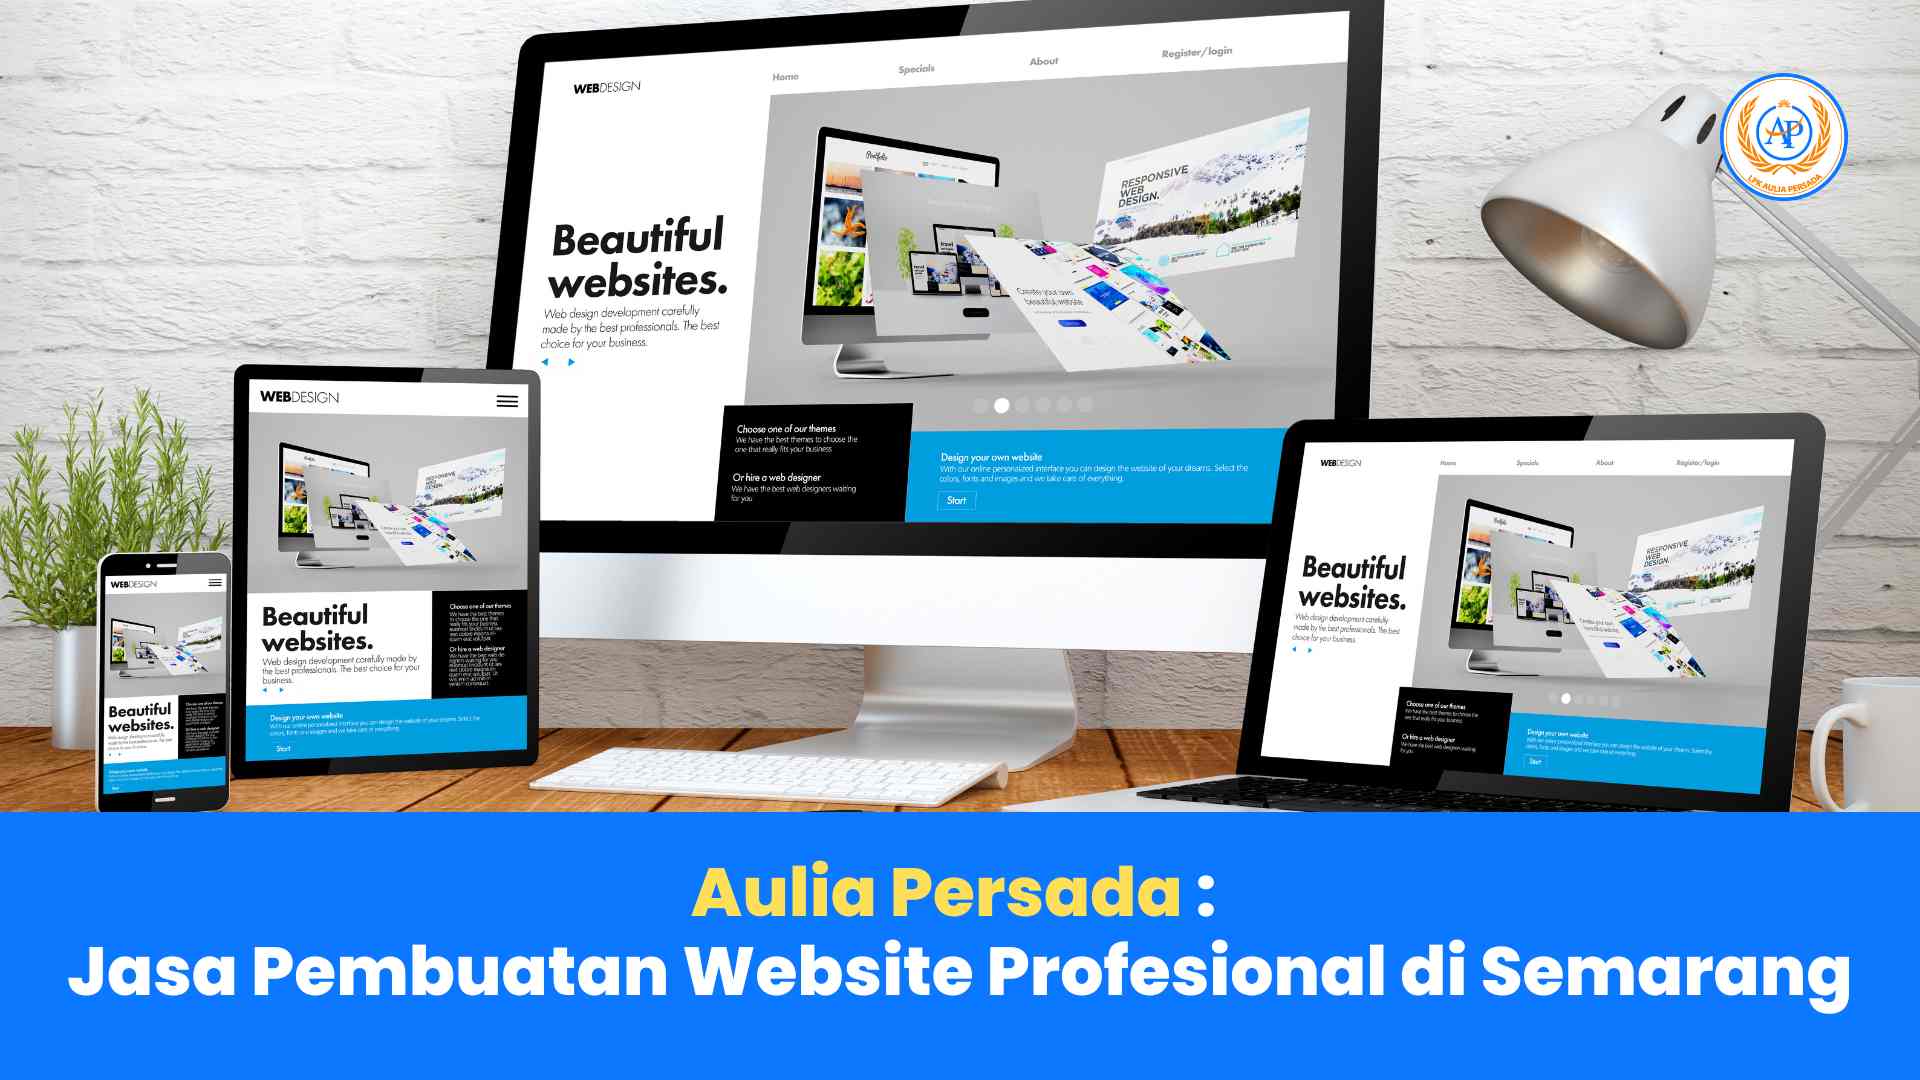 Aulia Persada: Jasa Pembuatan Website Profesional di Semarang